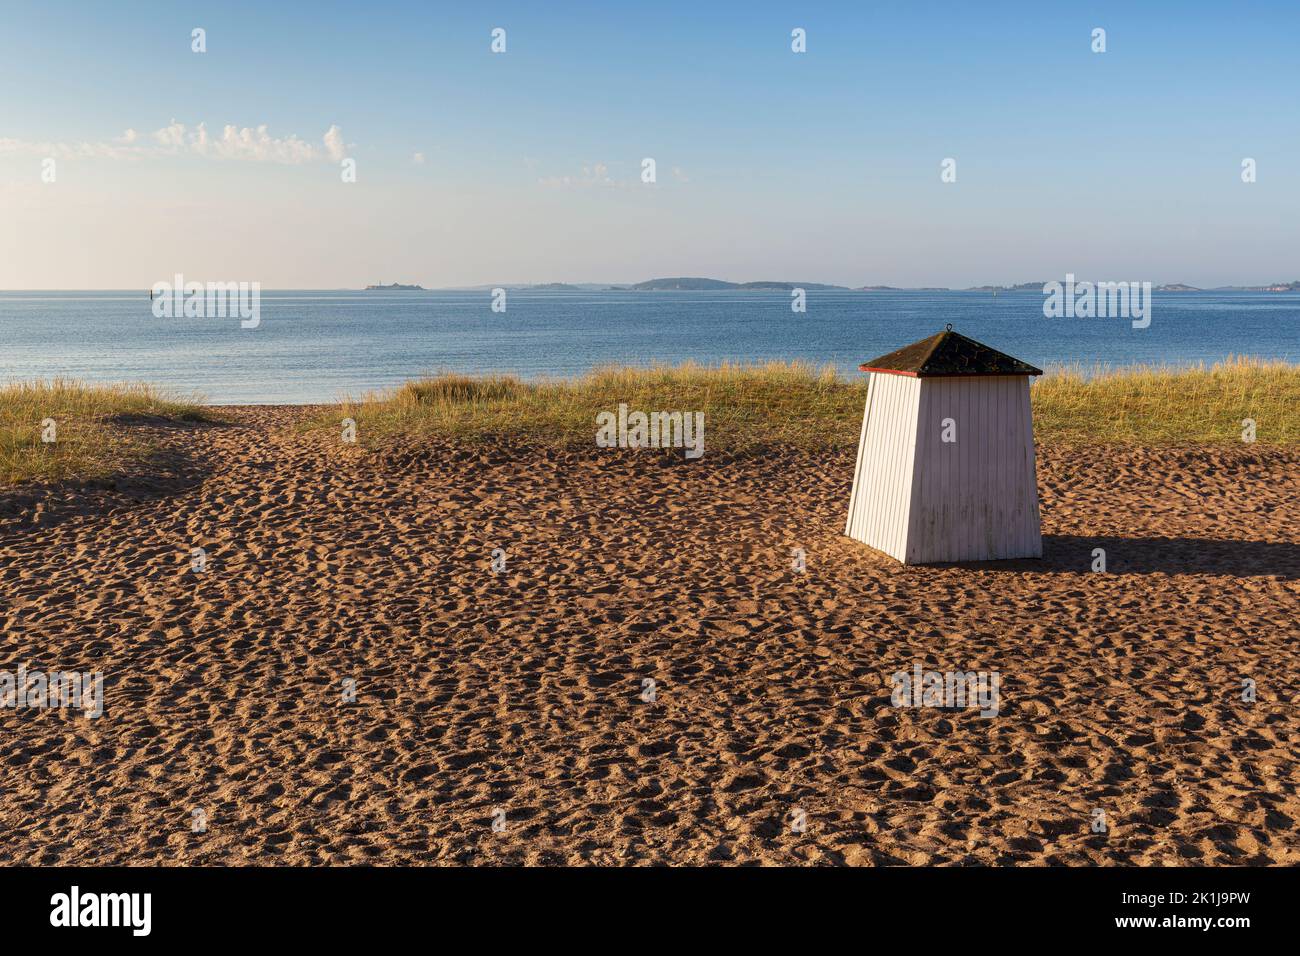 Cabina di legno o capanna presso la spiaggia vuota e sabbiosa di Tulliniemi a Hanko, Finlandia, in una mattinata di sole in estate. Foto Stock